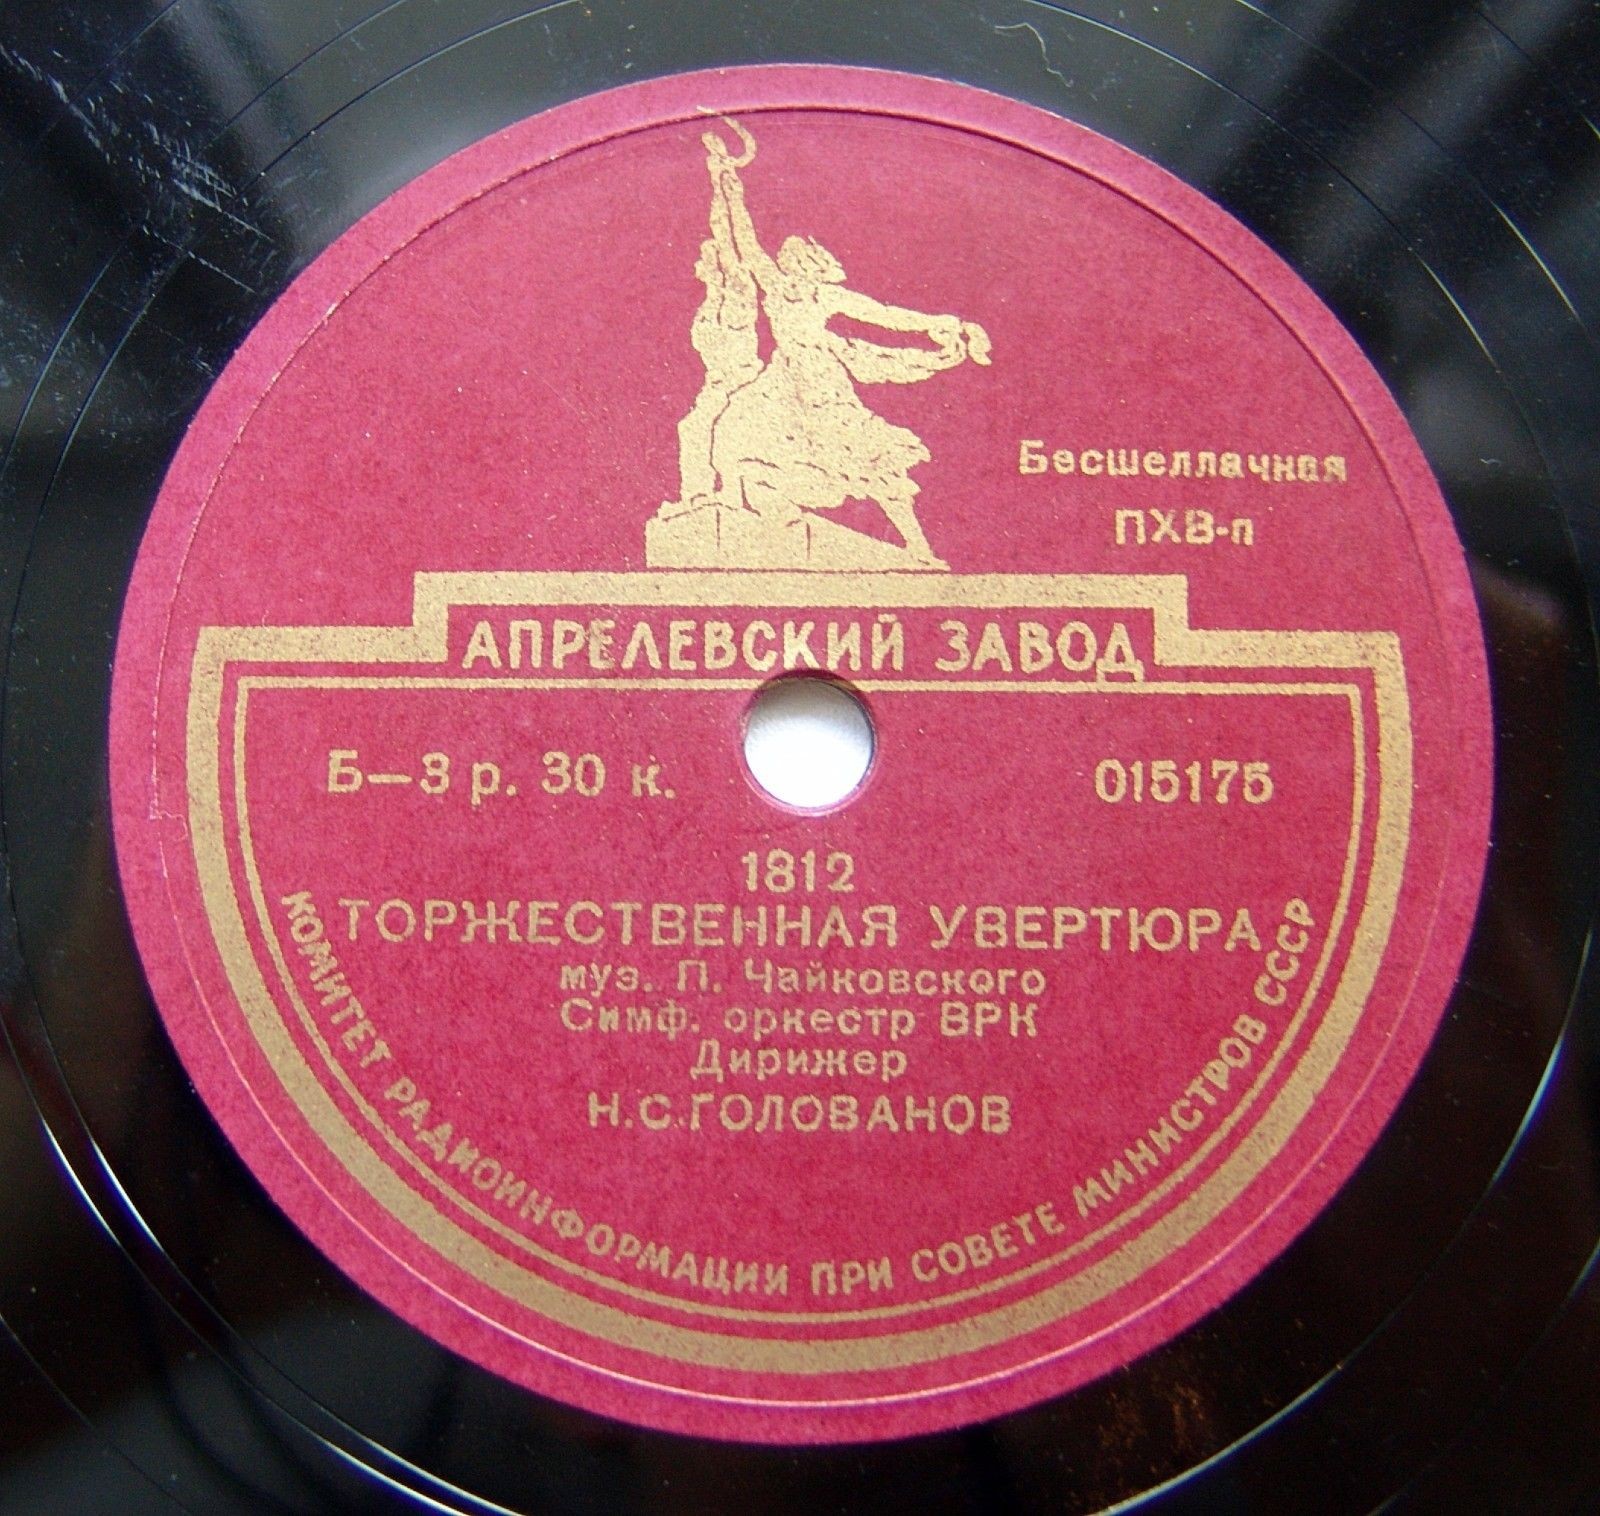 П. Чайковский — 1812 Торжественная увертюра